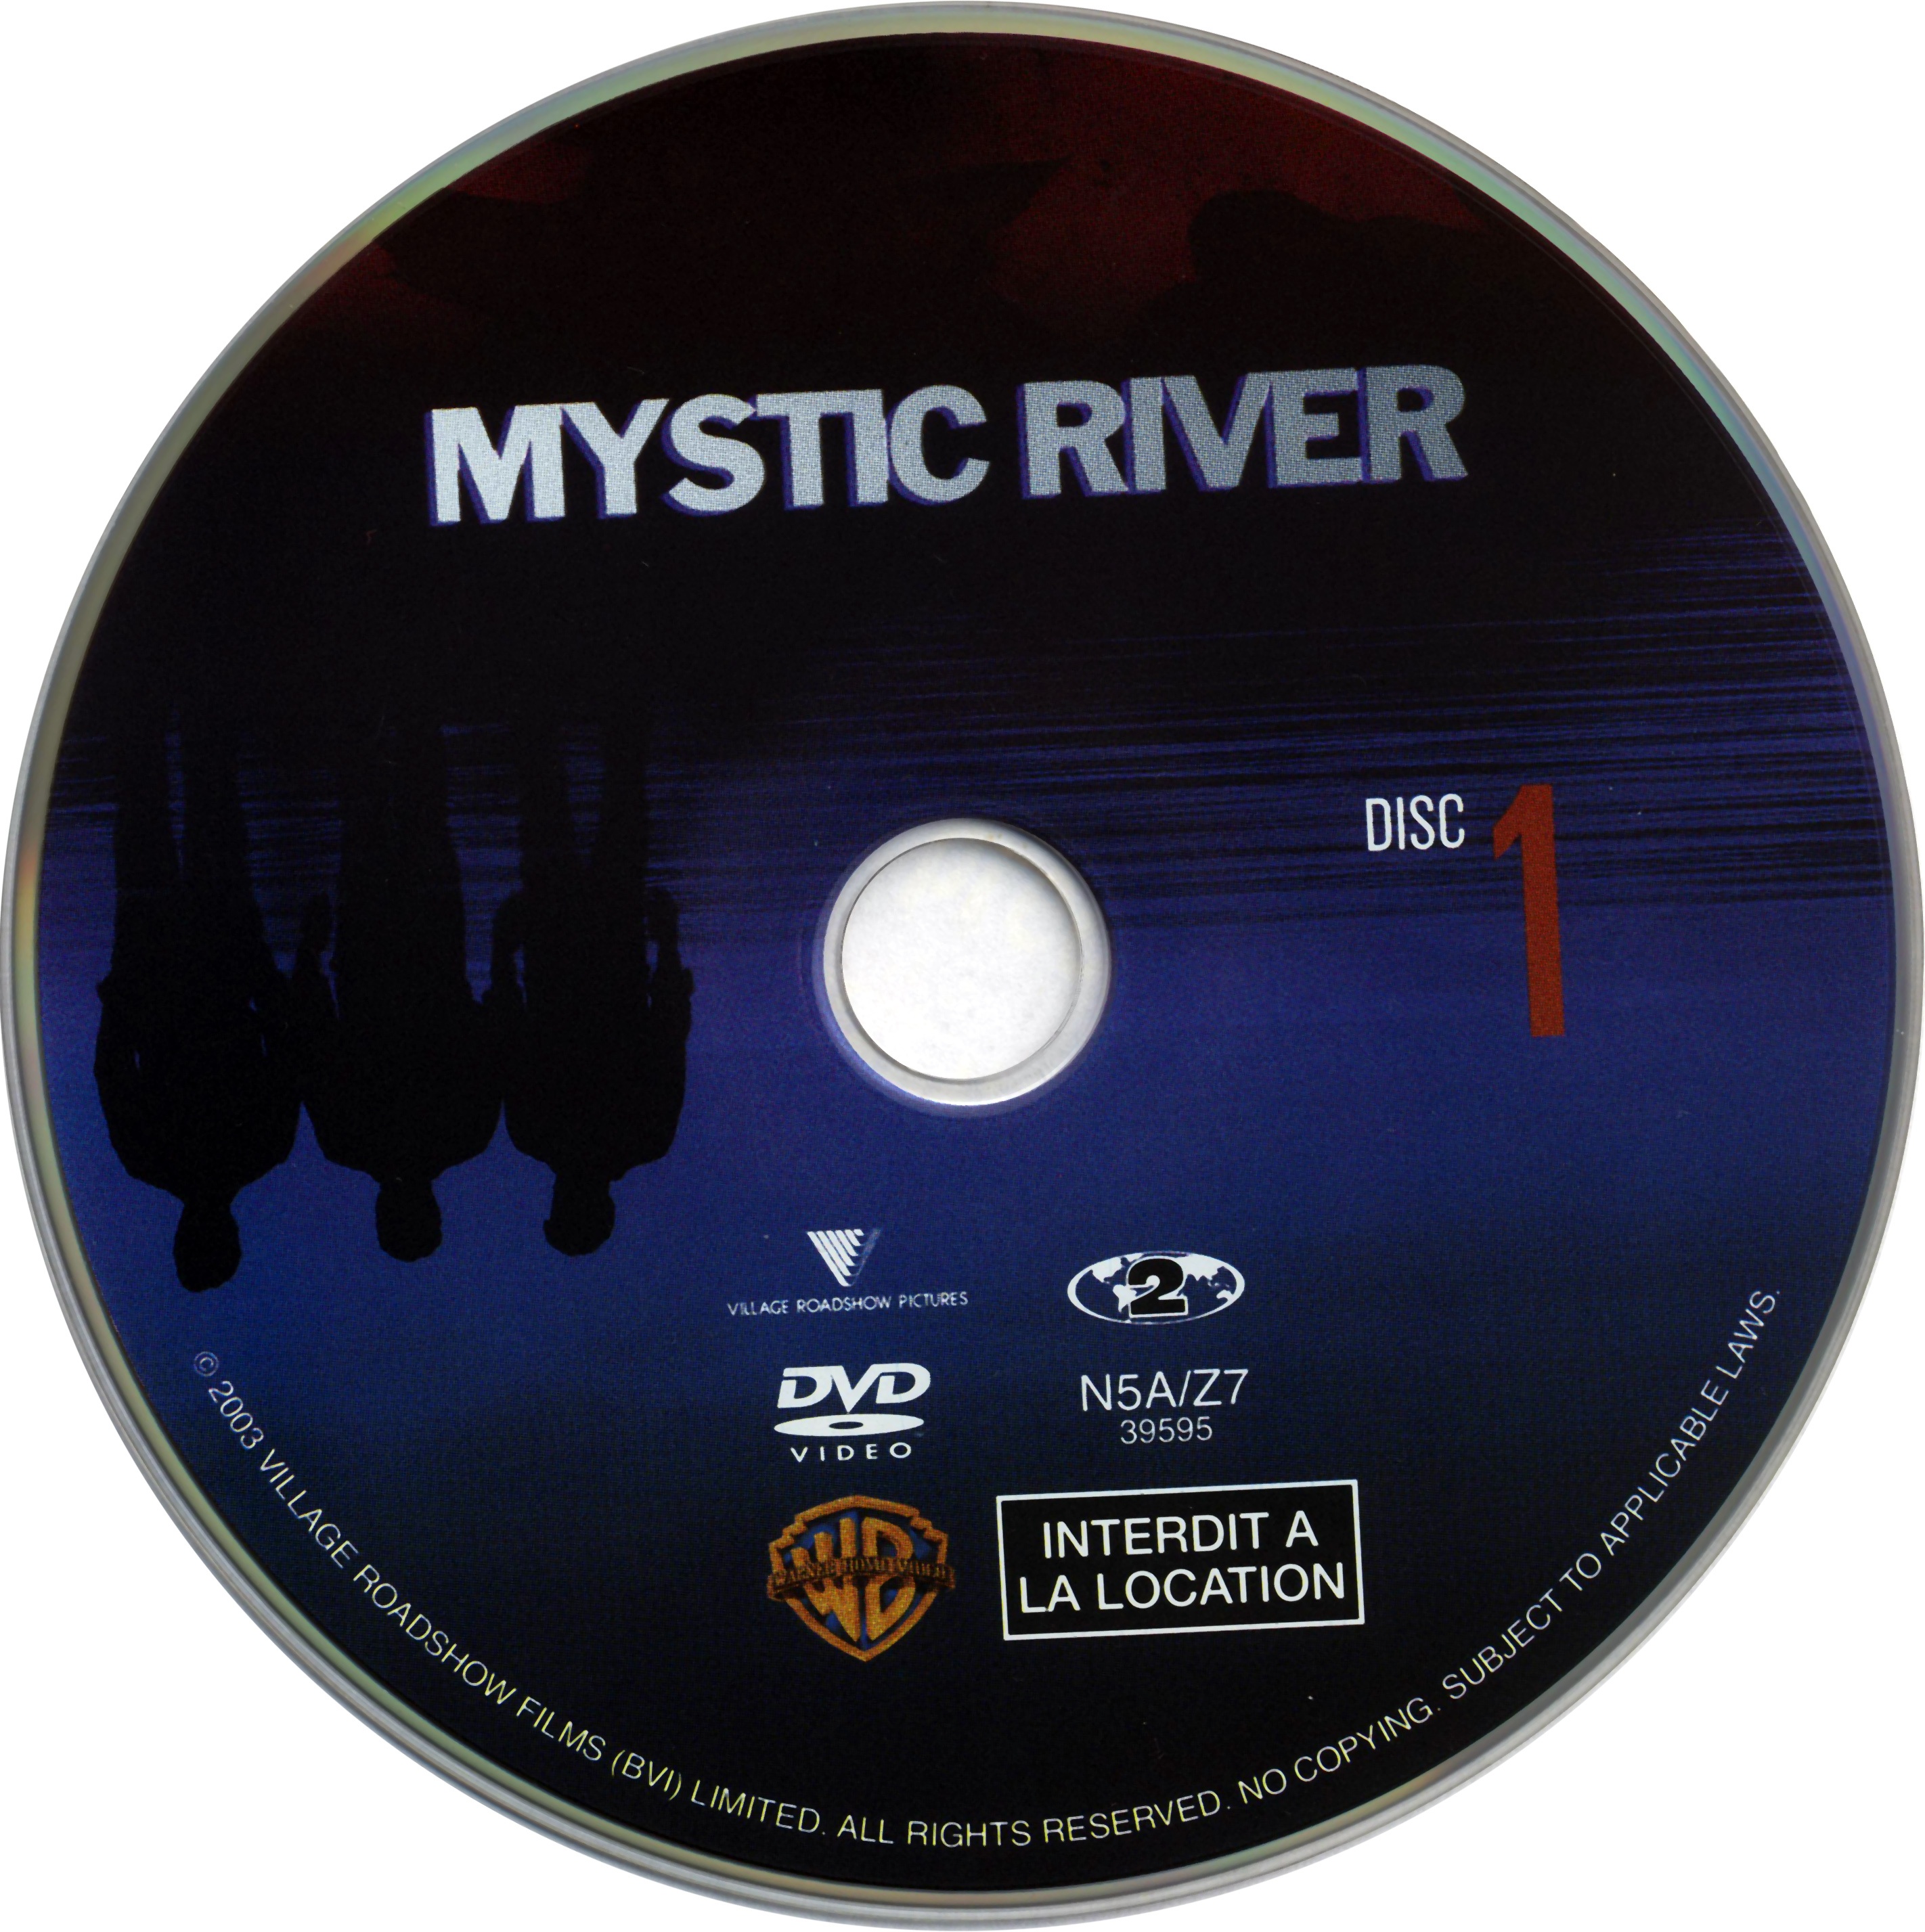 Mystic river DISC 1